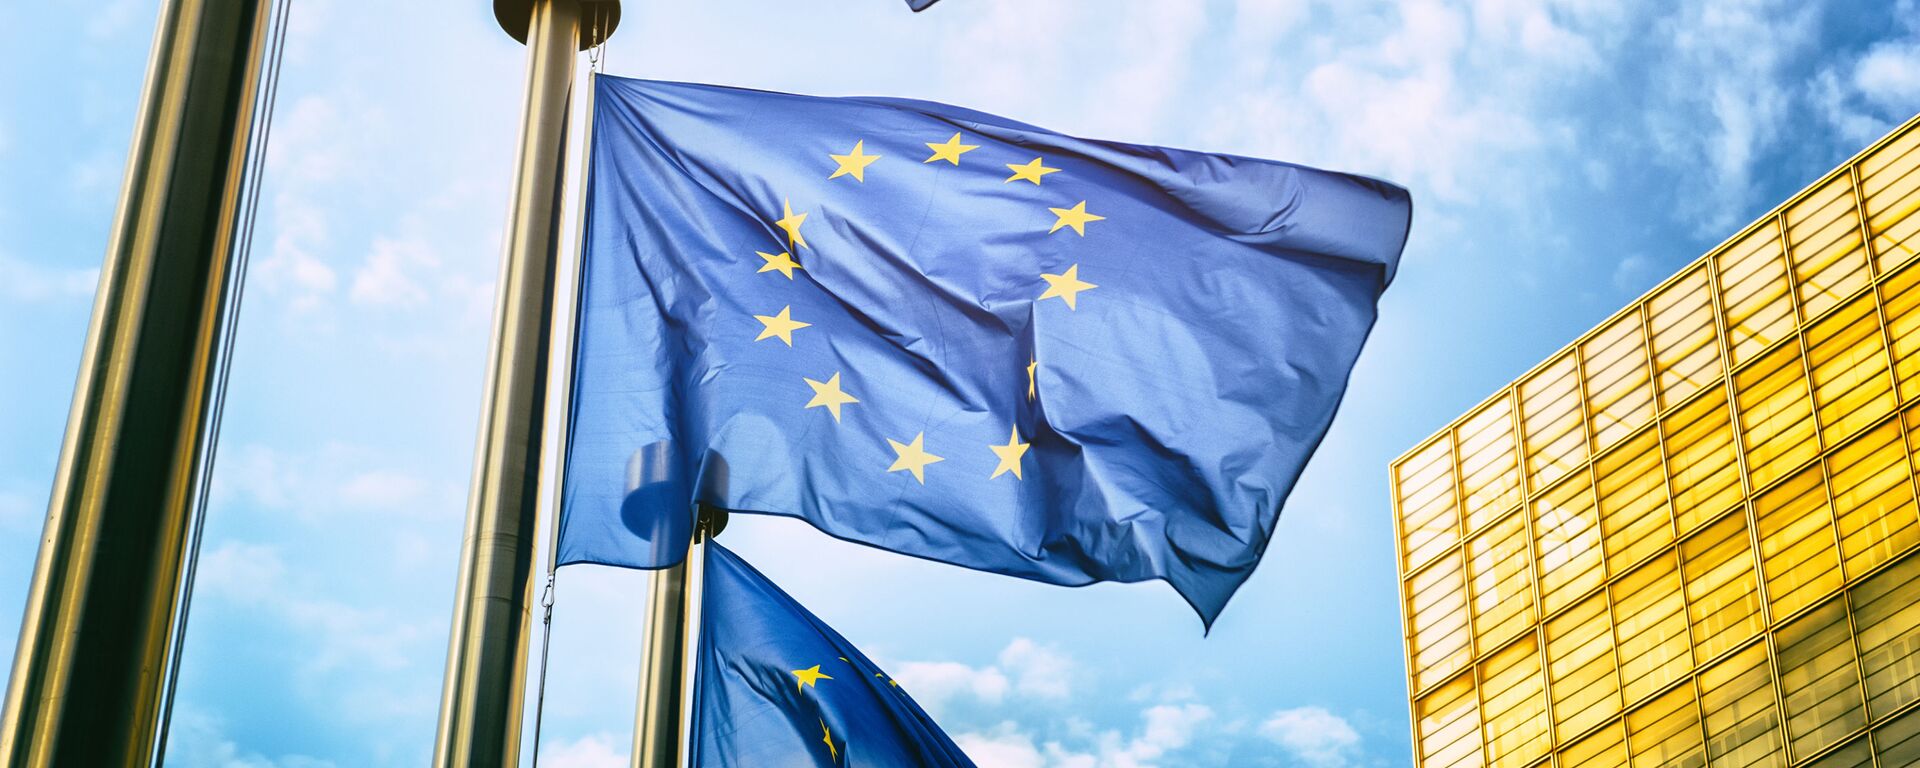 Флаги Евросоюза напротив здания Европейской комиссии в Брюсселе  - Sputnik Узбекистан, 1920, 03.03.2021